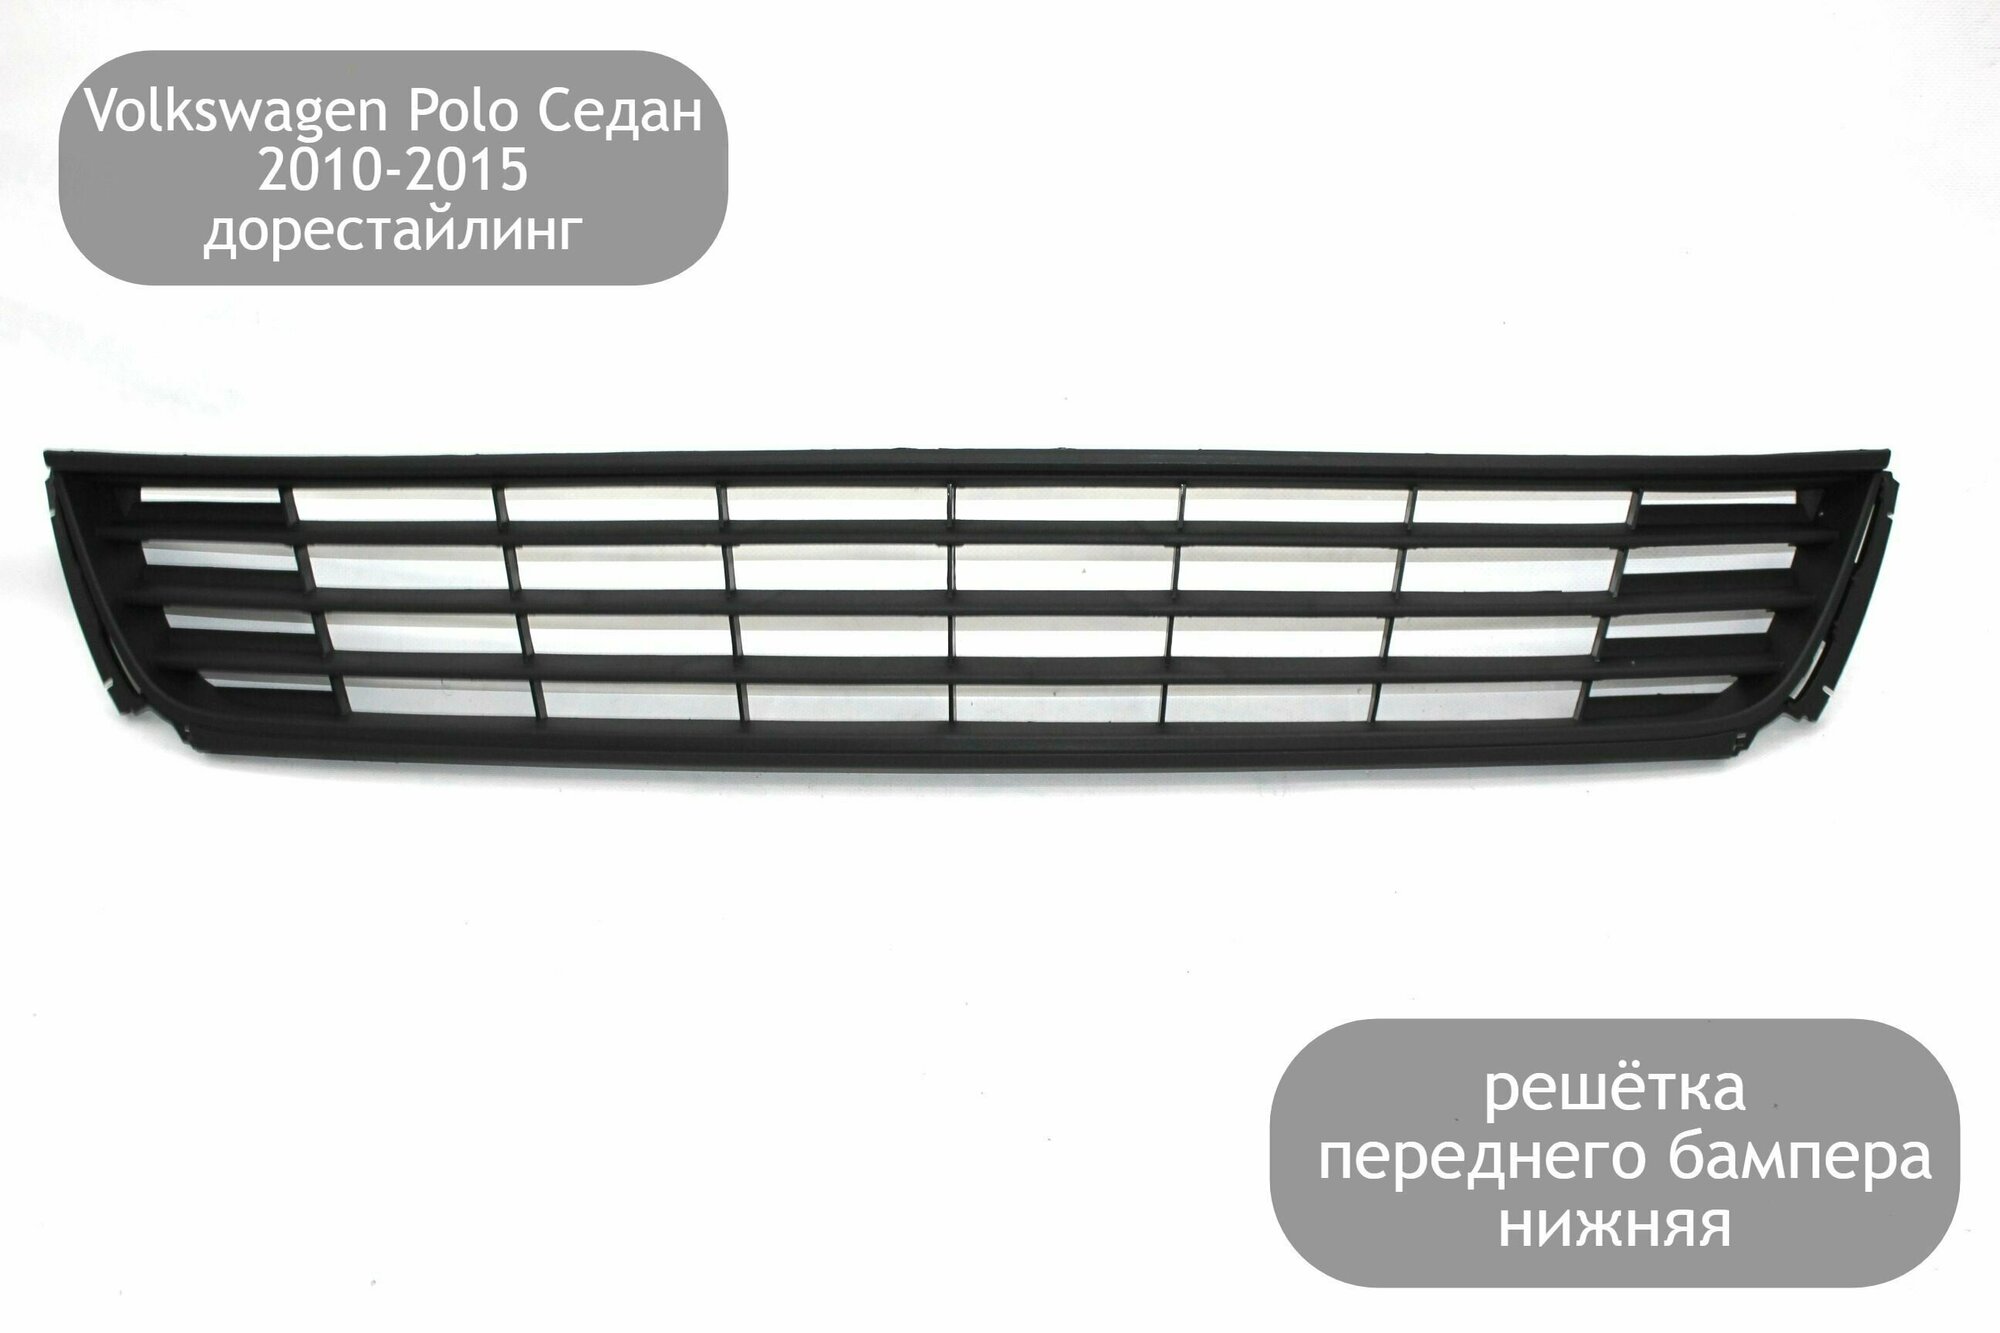 Решетка переднего бампера нижняя центральная для Volkswagen Polo Седан 2010-2015 (дорестайлинг)